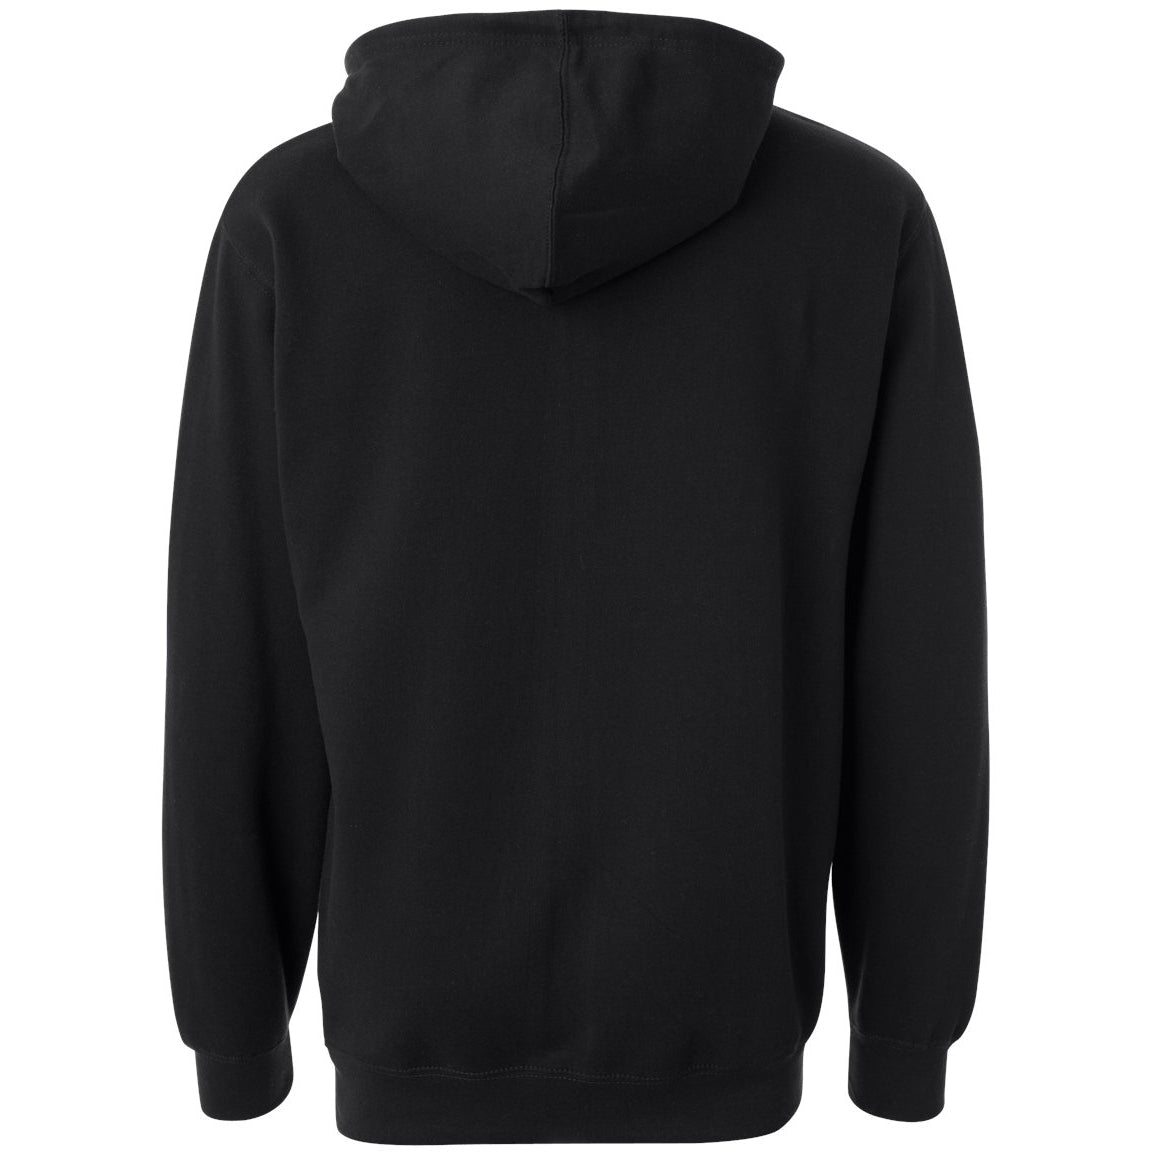 HOODIE - HEROIC Trendy-cut Hooded Sweatshirt